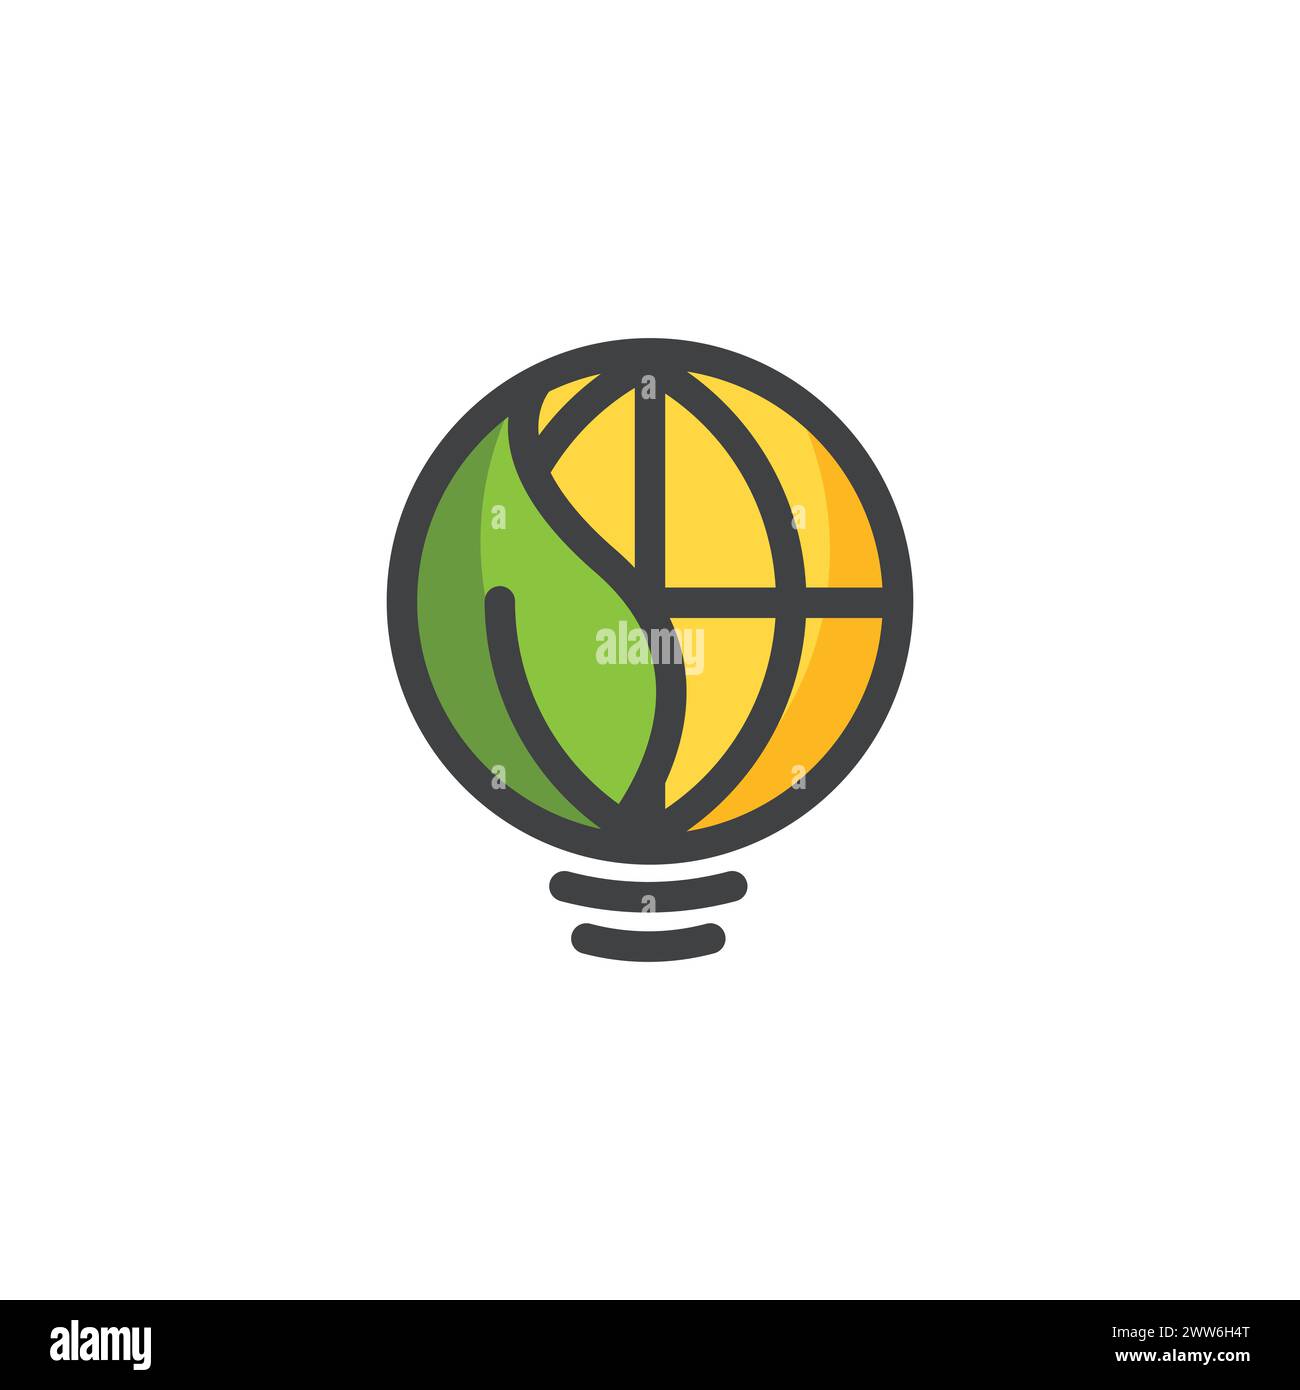 Illustrazione del logo energia verde. Lampada con globo e foglie. Concetto ecologico con lampadina, terra e foglie. Simbolo simbolo icona risparmio energia. Illustrazione Vettoriale